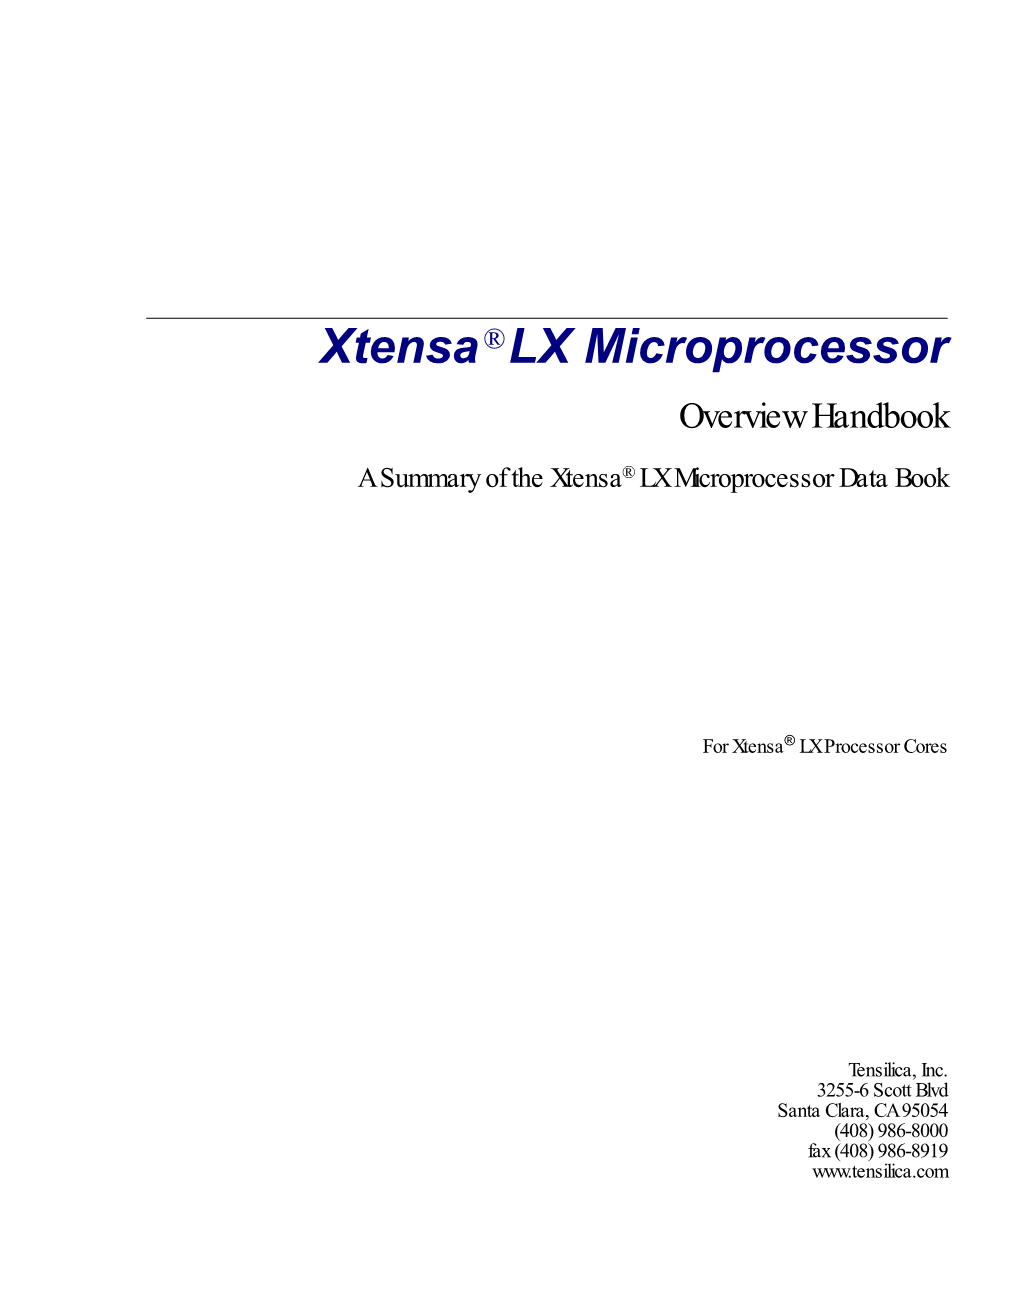 Xtensa LX Microprocessor Overview Handbook Iii Contents